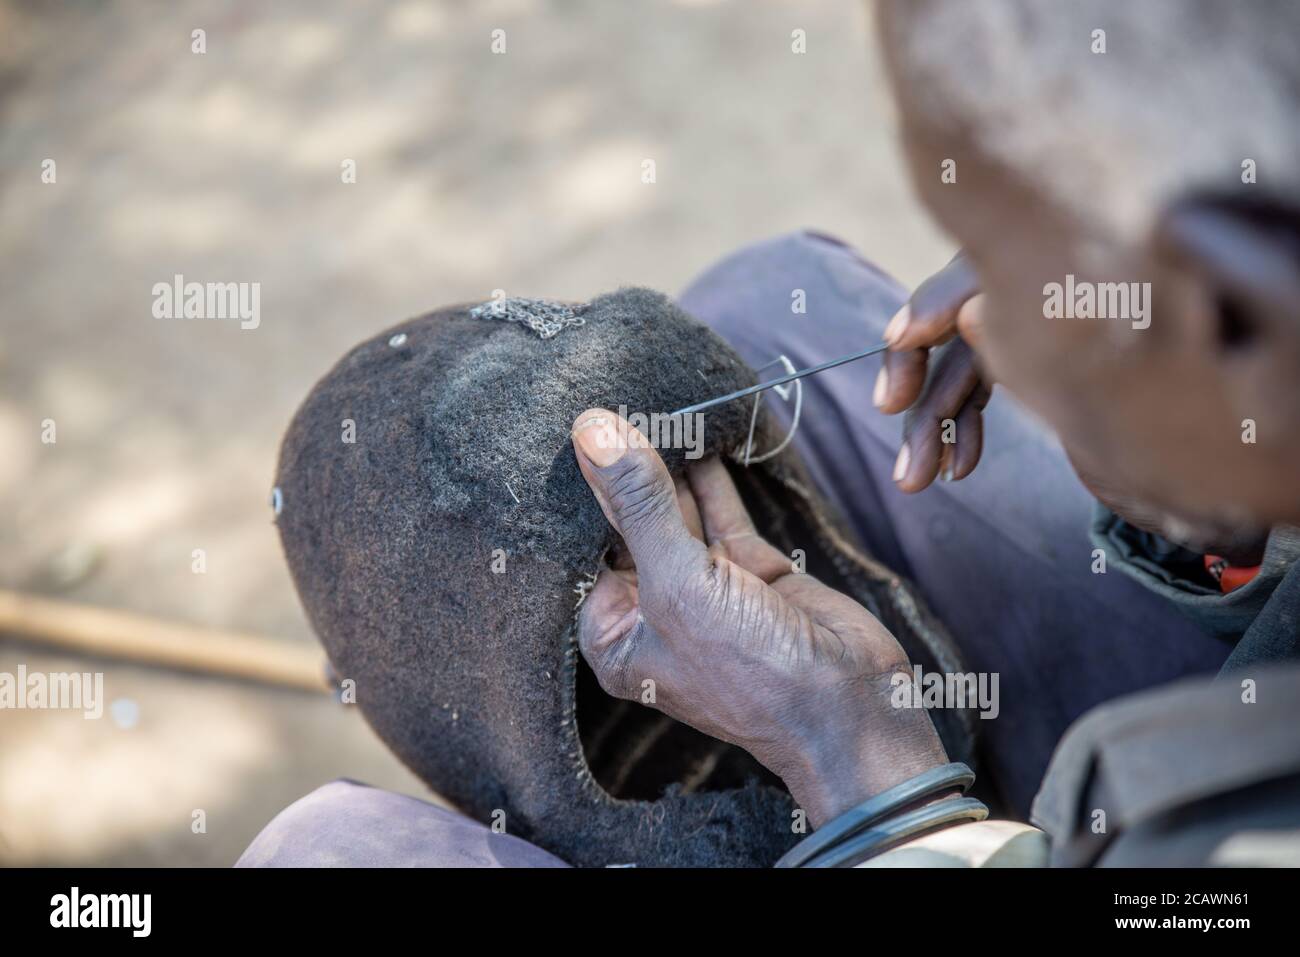 Ancien homme de Karamojong maintenant un étimat (epukot) hdeaddress fait de cheveux humains et de plumes d'autruche, district de Moroto, Ouganda Banque D'Images